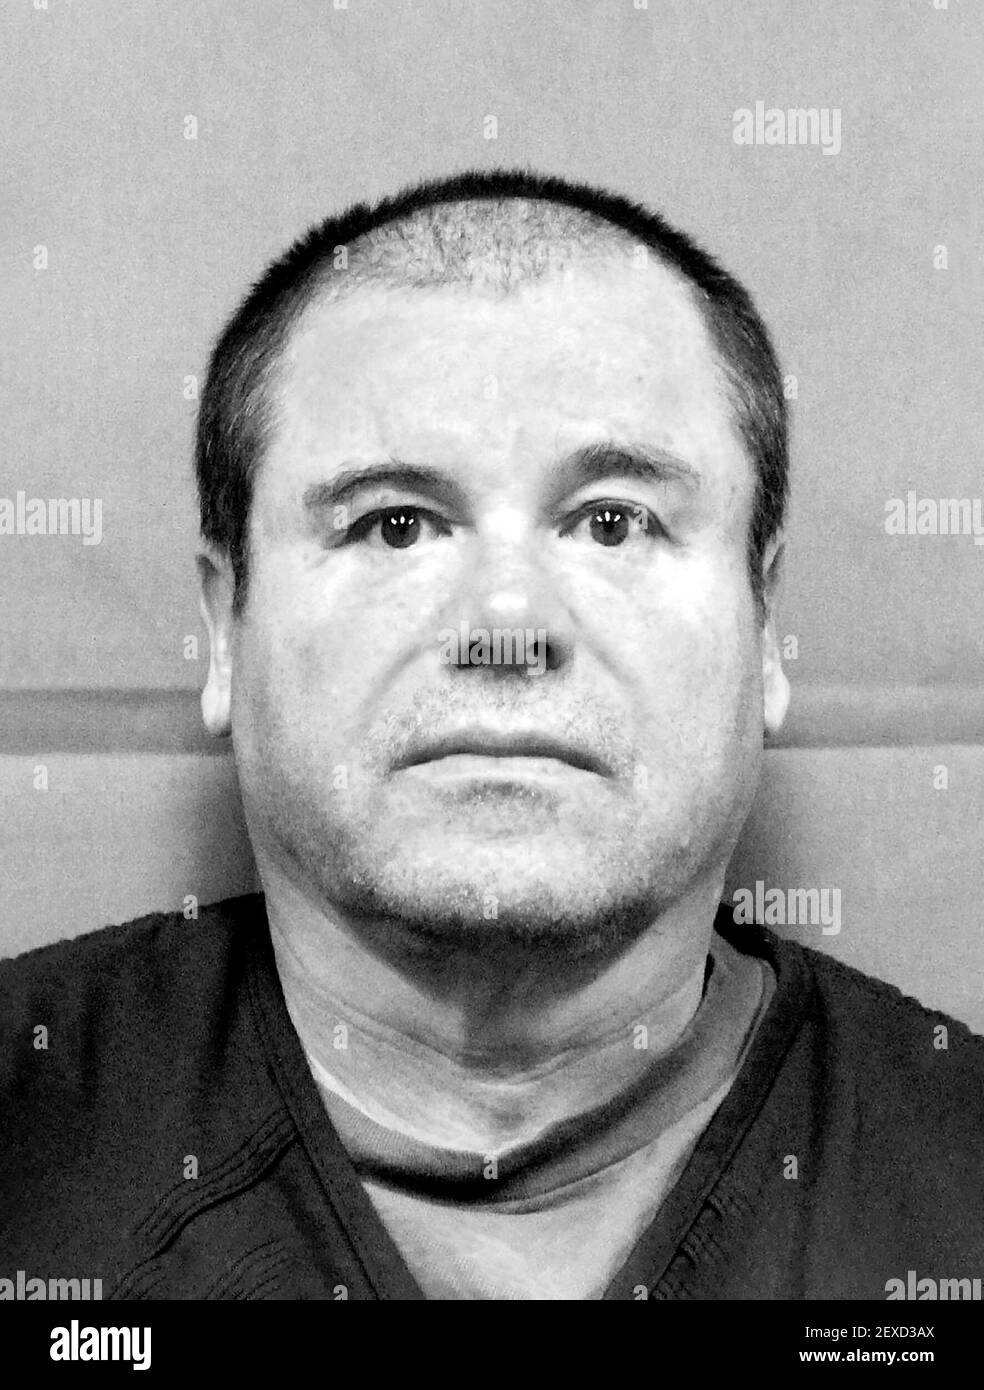 El Chapo. Fotografia di prenotazione di Joaquín Archivaldo Guzmán Loera (n.1957), dopo la sua estradizione negli Stati Uniti nel 2017. Foto Stock